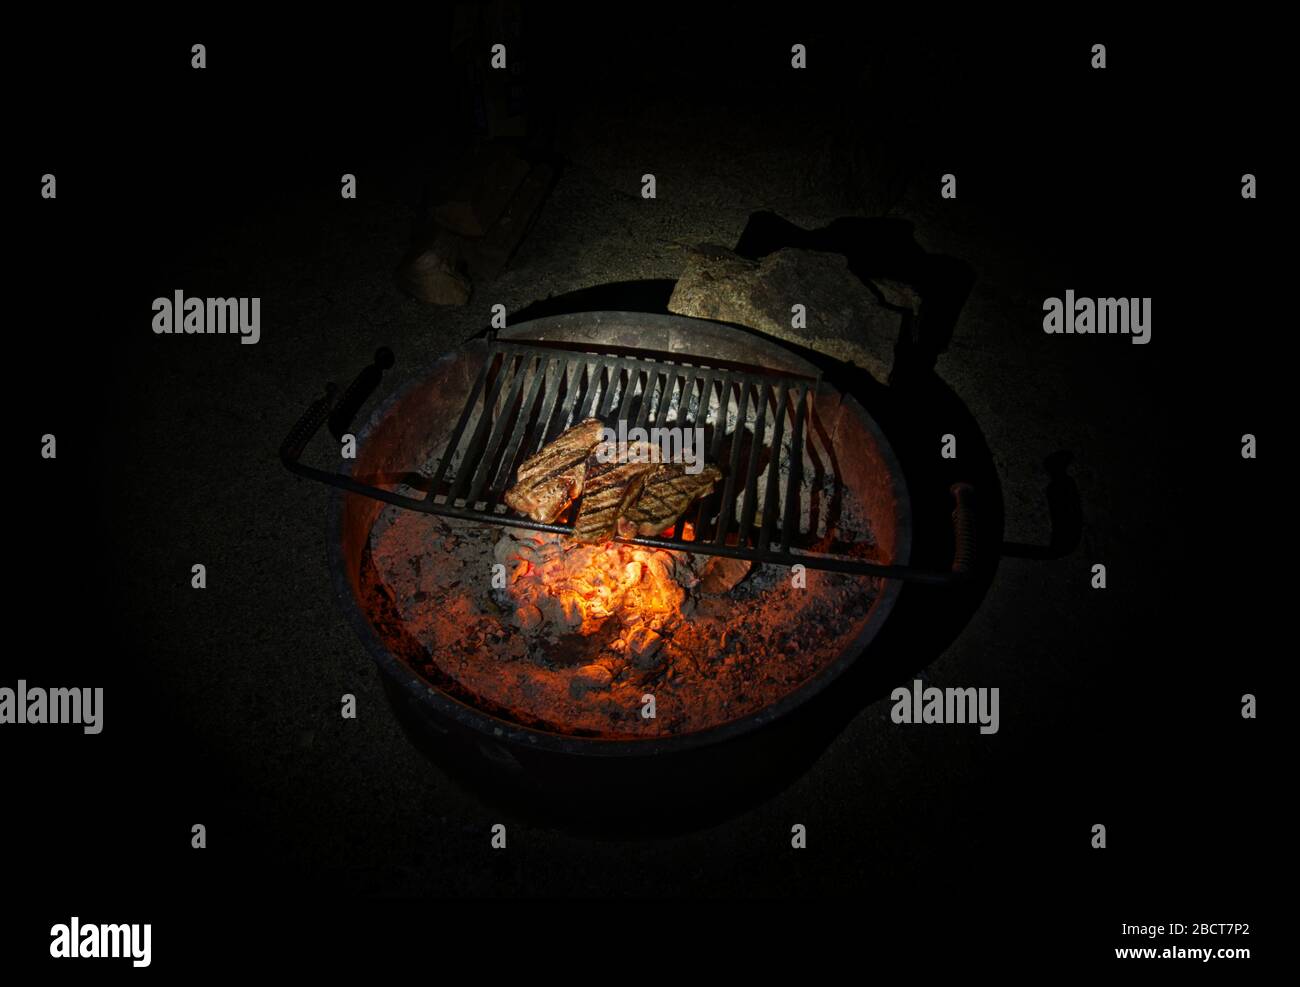 Tres filetes listos a la parrilla en un cuenco para fuego redondo en el fondo Foto de stock